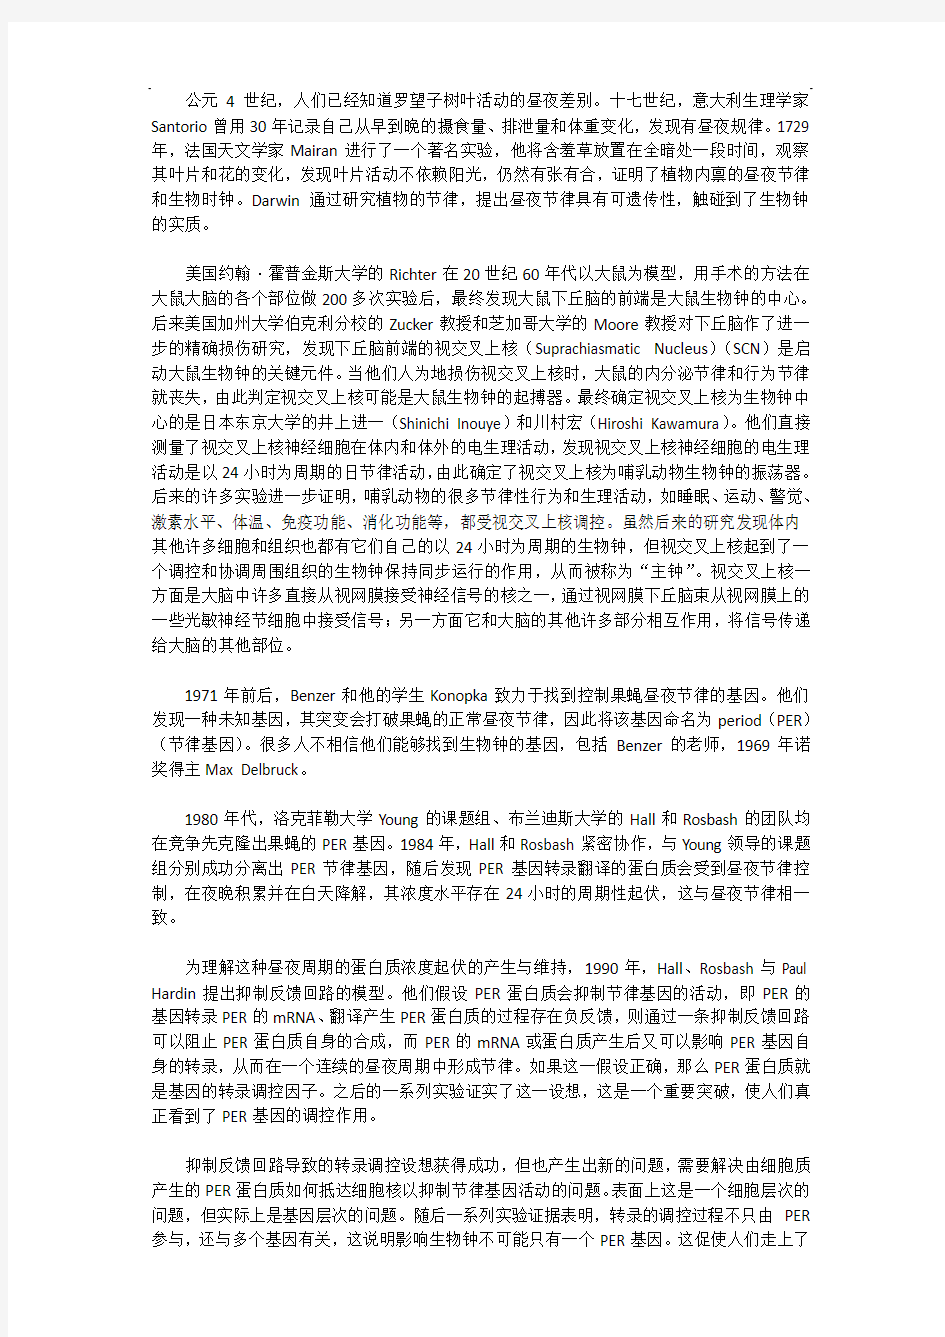 2019年湖北武汉事业单位考试真题《综合应用能力》C类